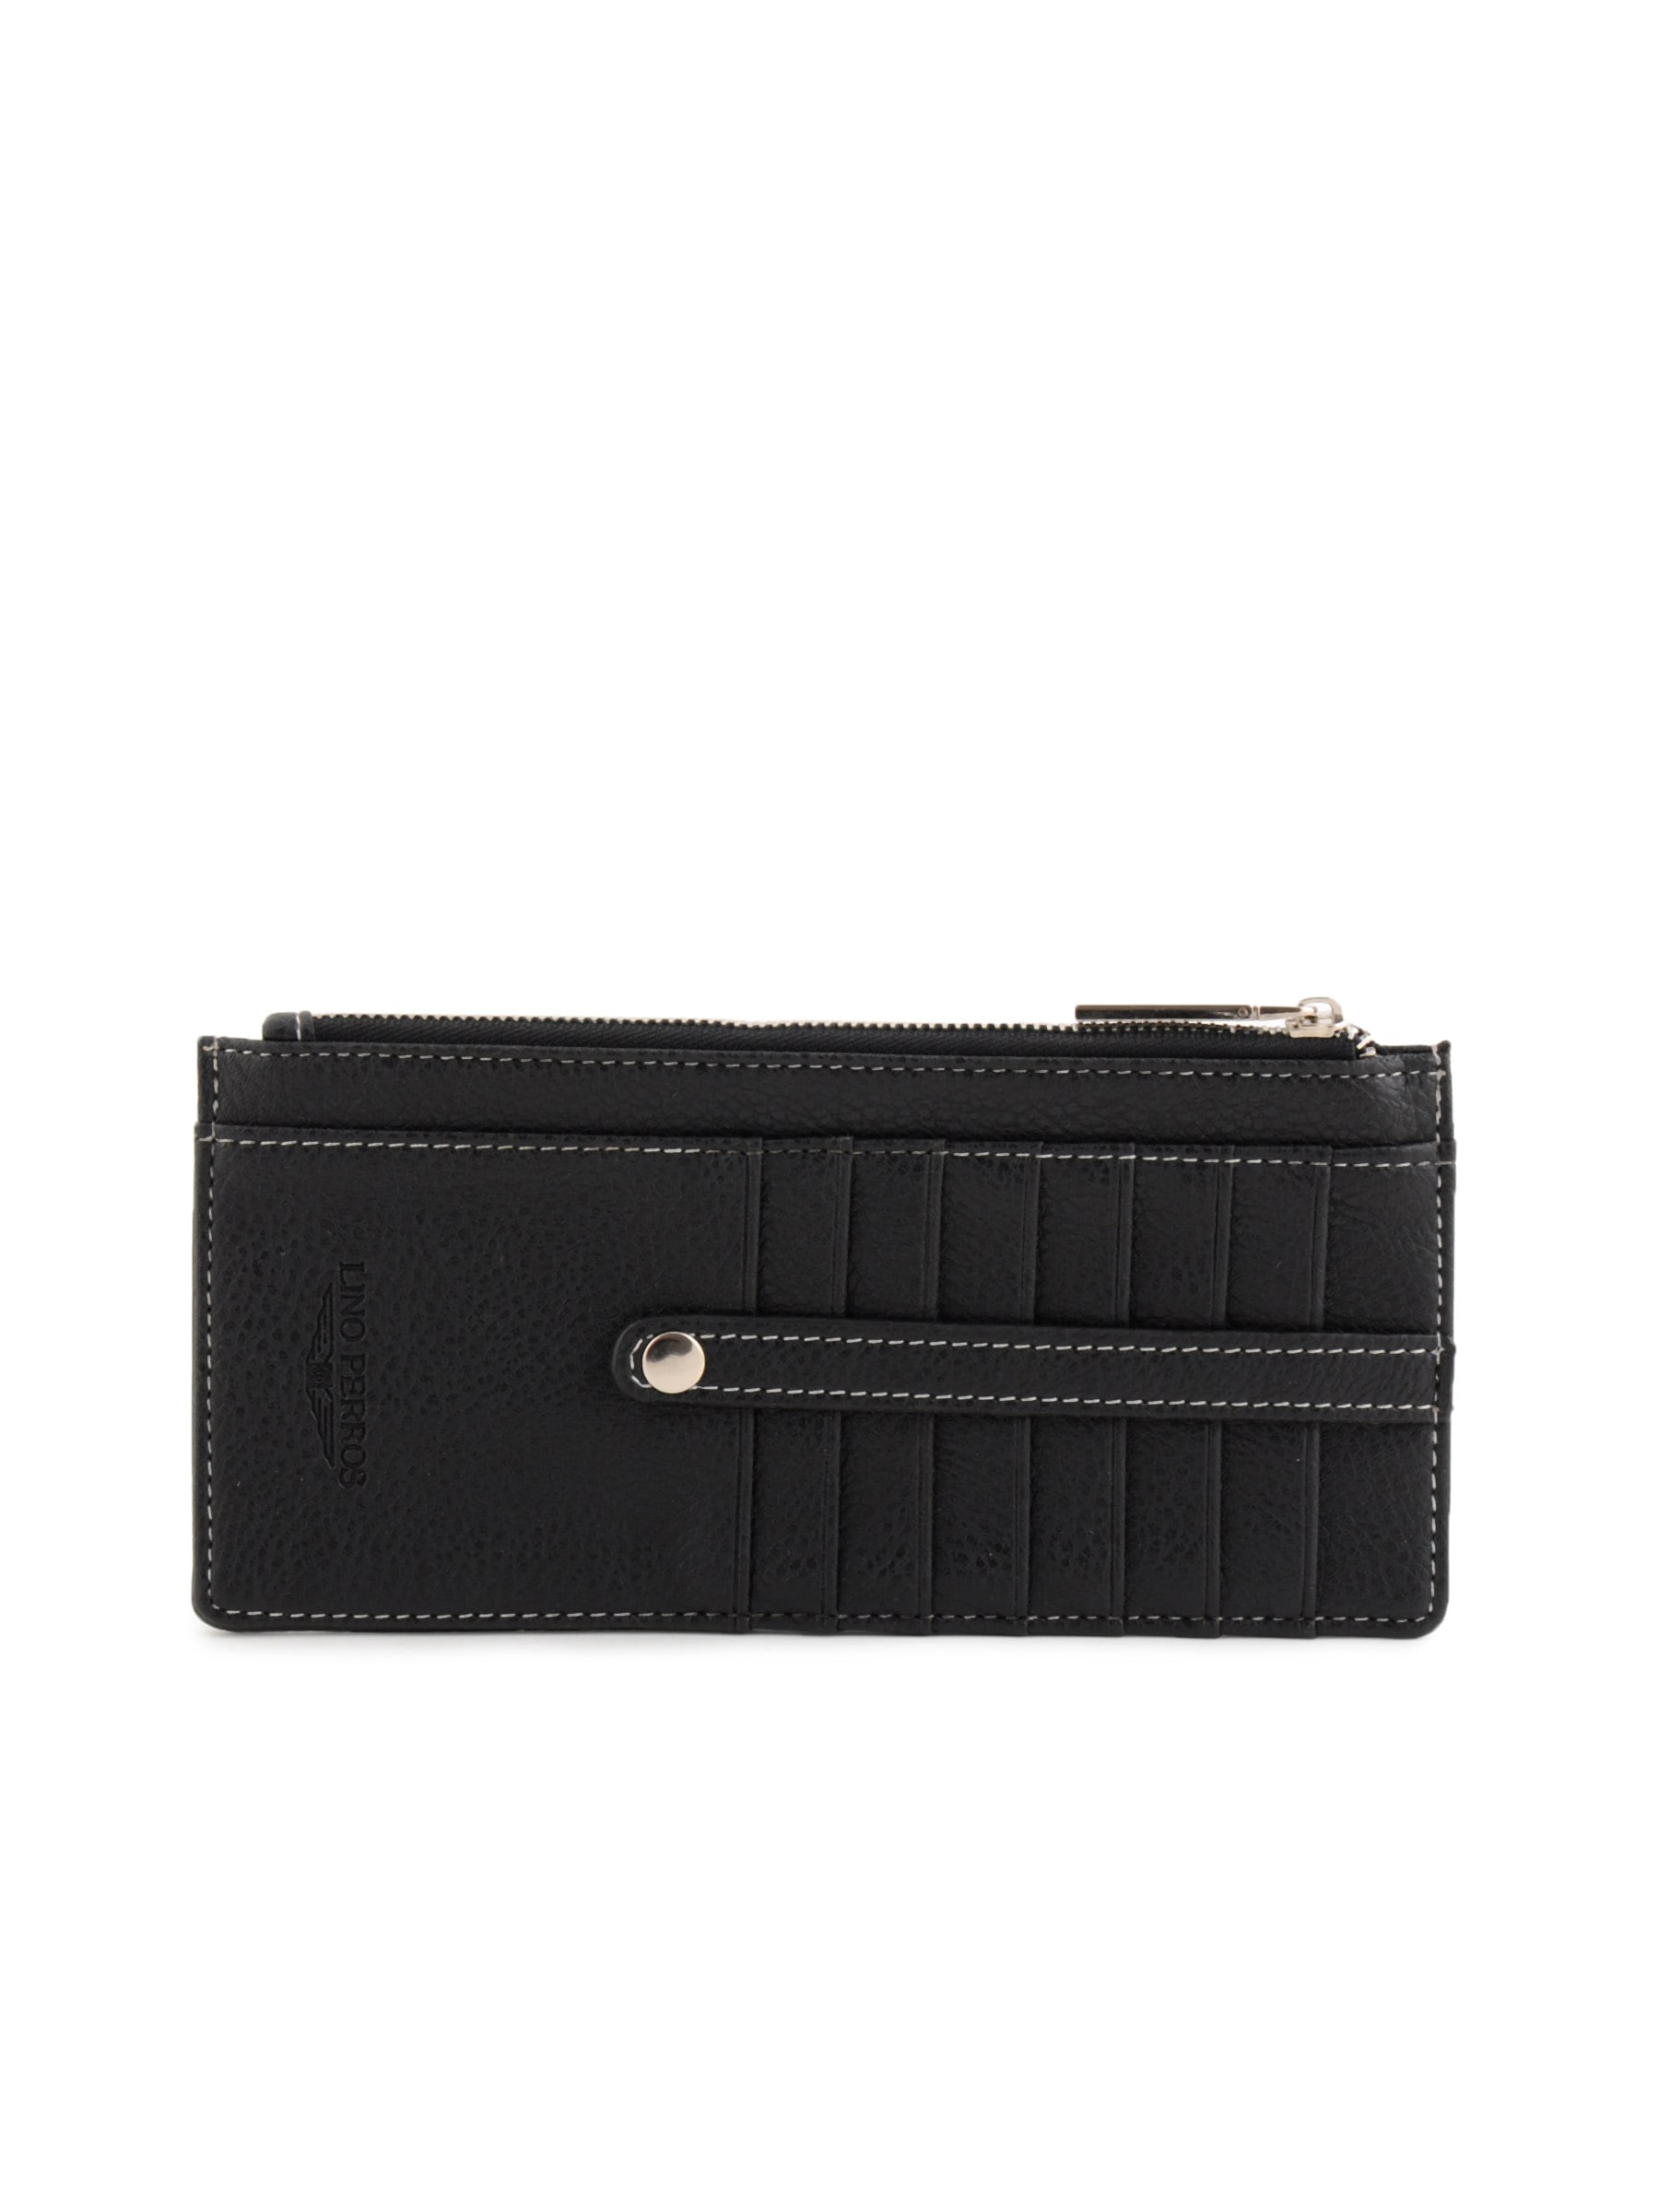 Lino Perros Women Solid Black Wallet